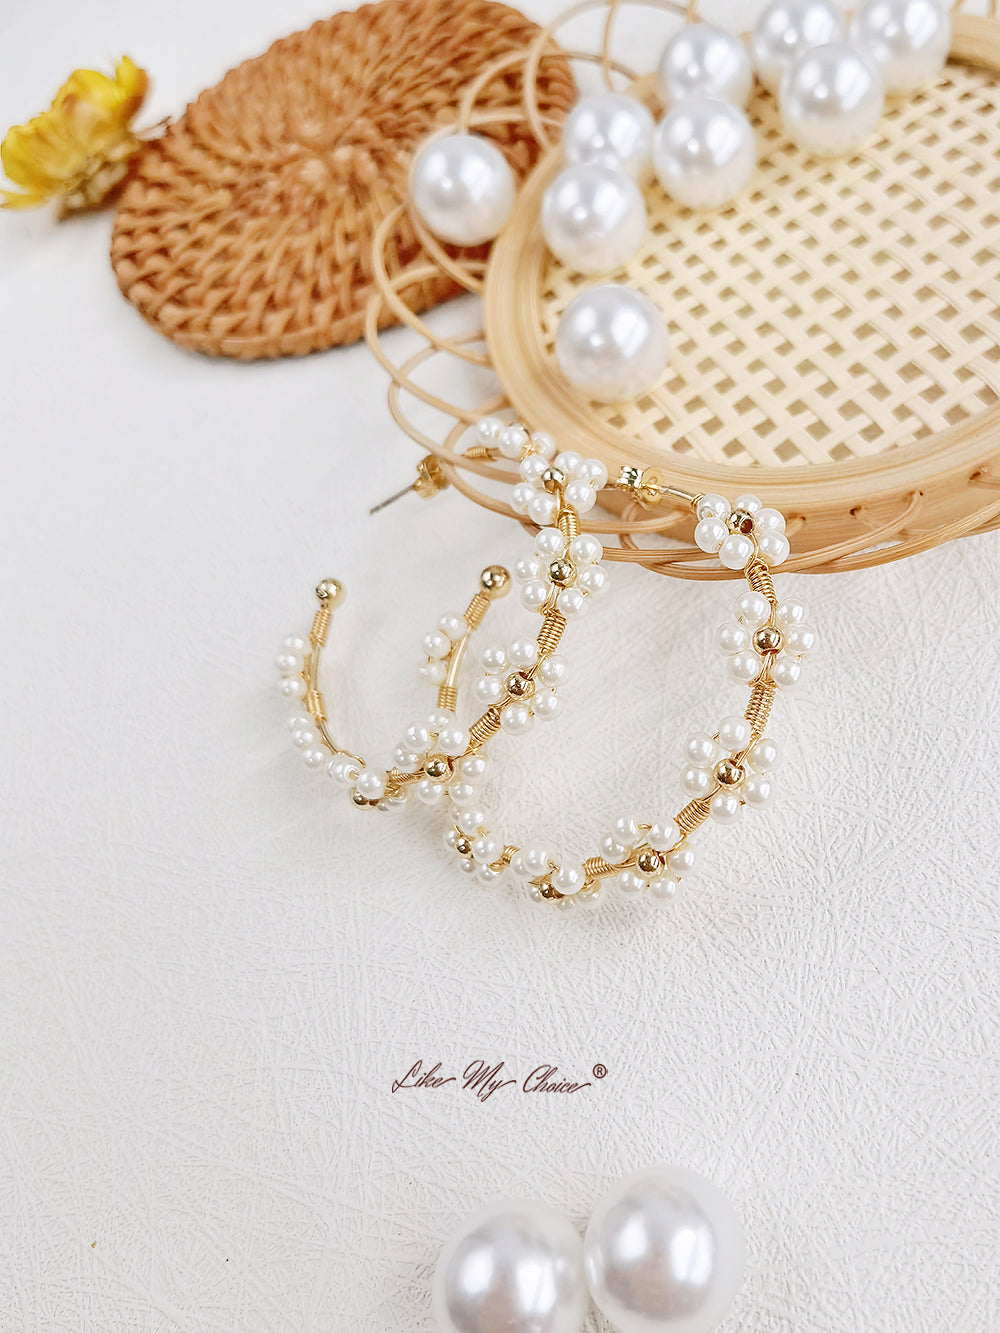 Muses de perles fantaisistes : boucles d'oreilles Cloudy Pearl d'inspiration bohème